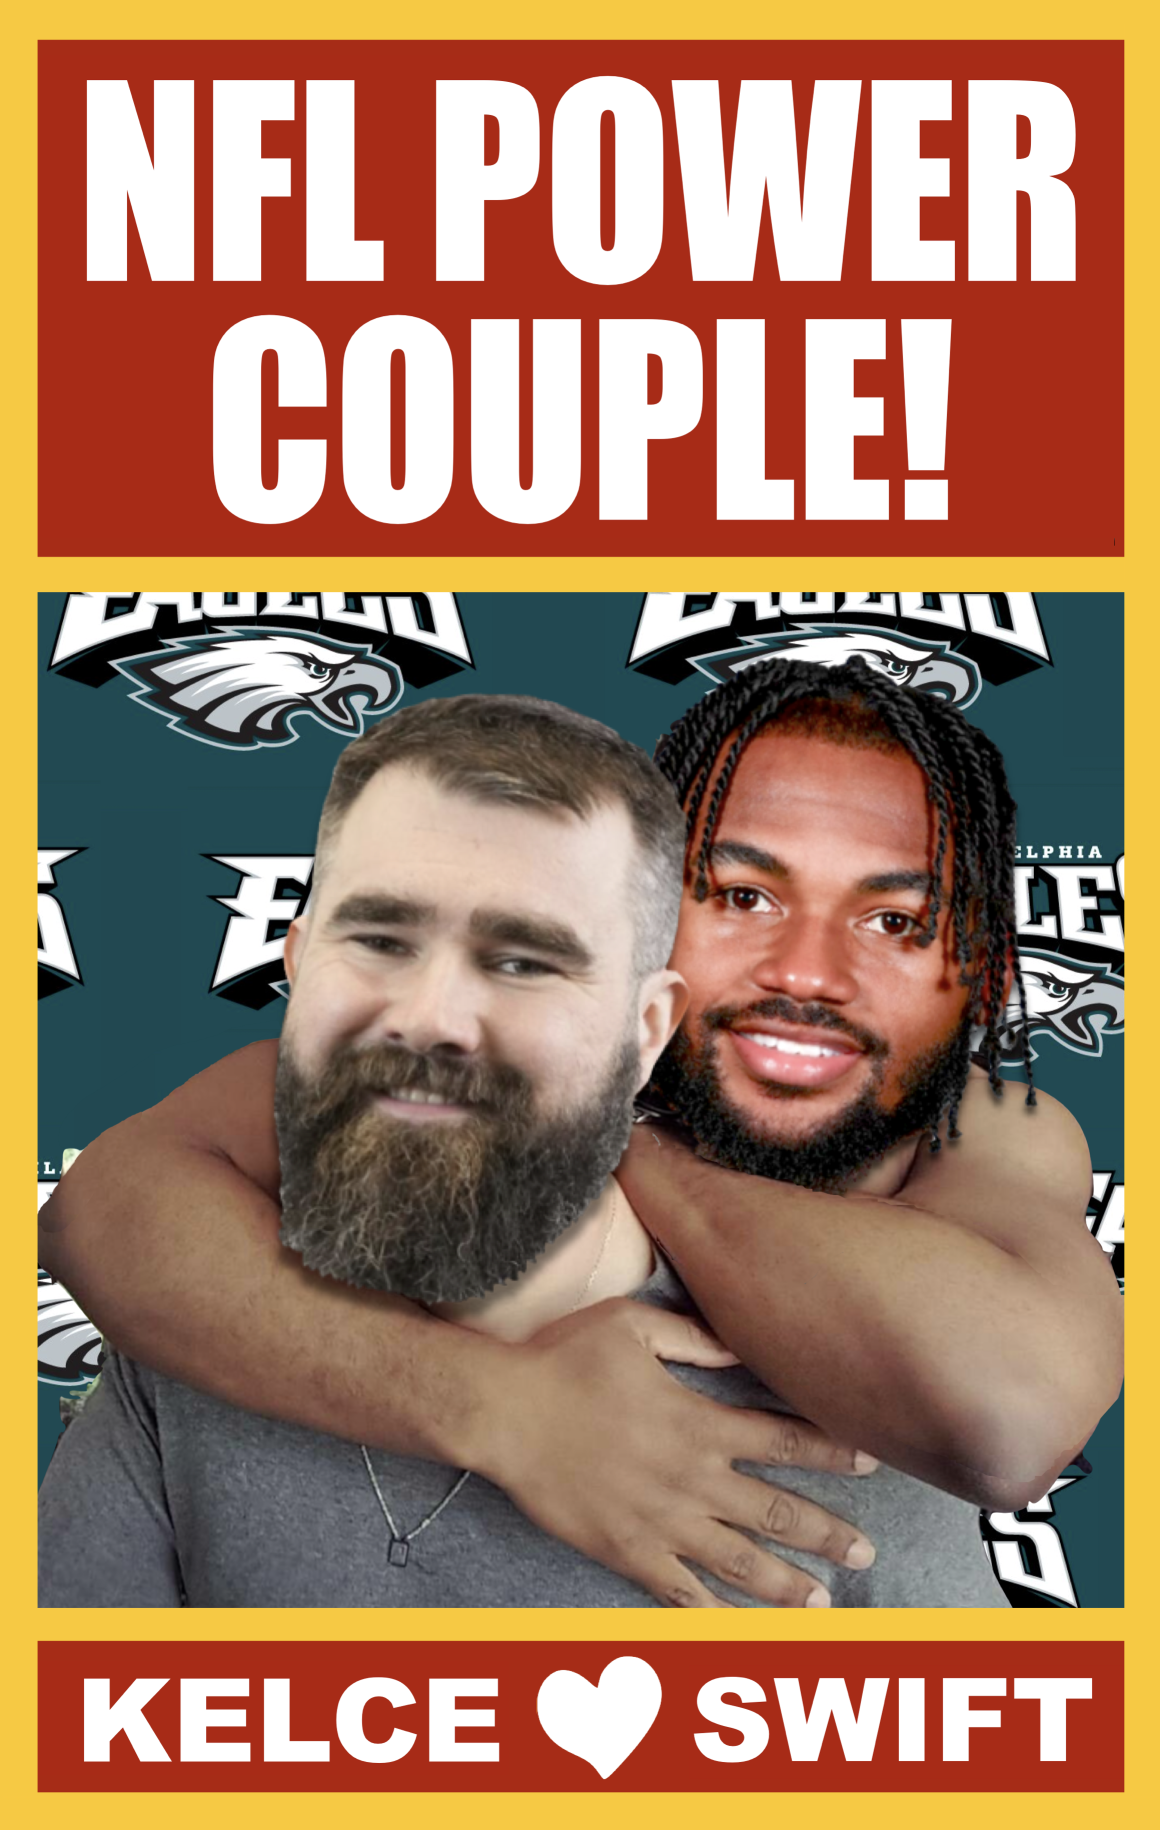 NFL Power Couple Kelce Swift Meme Blank Meme Template